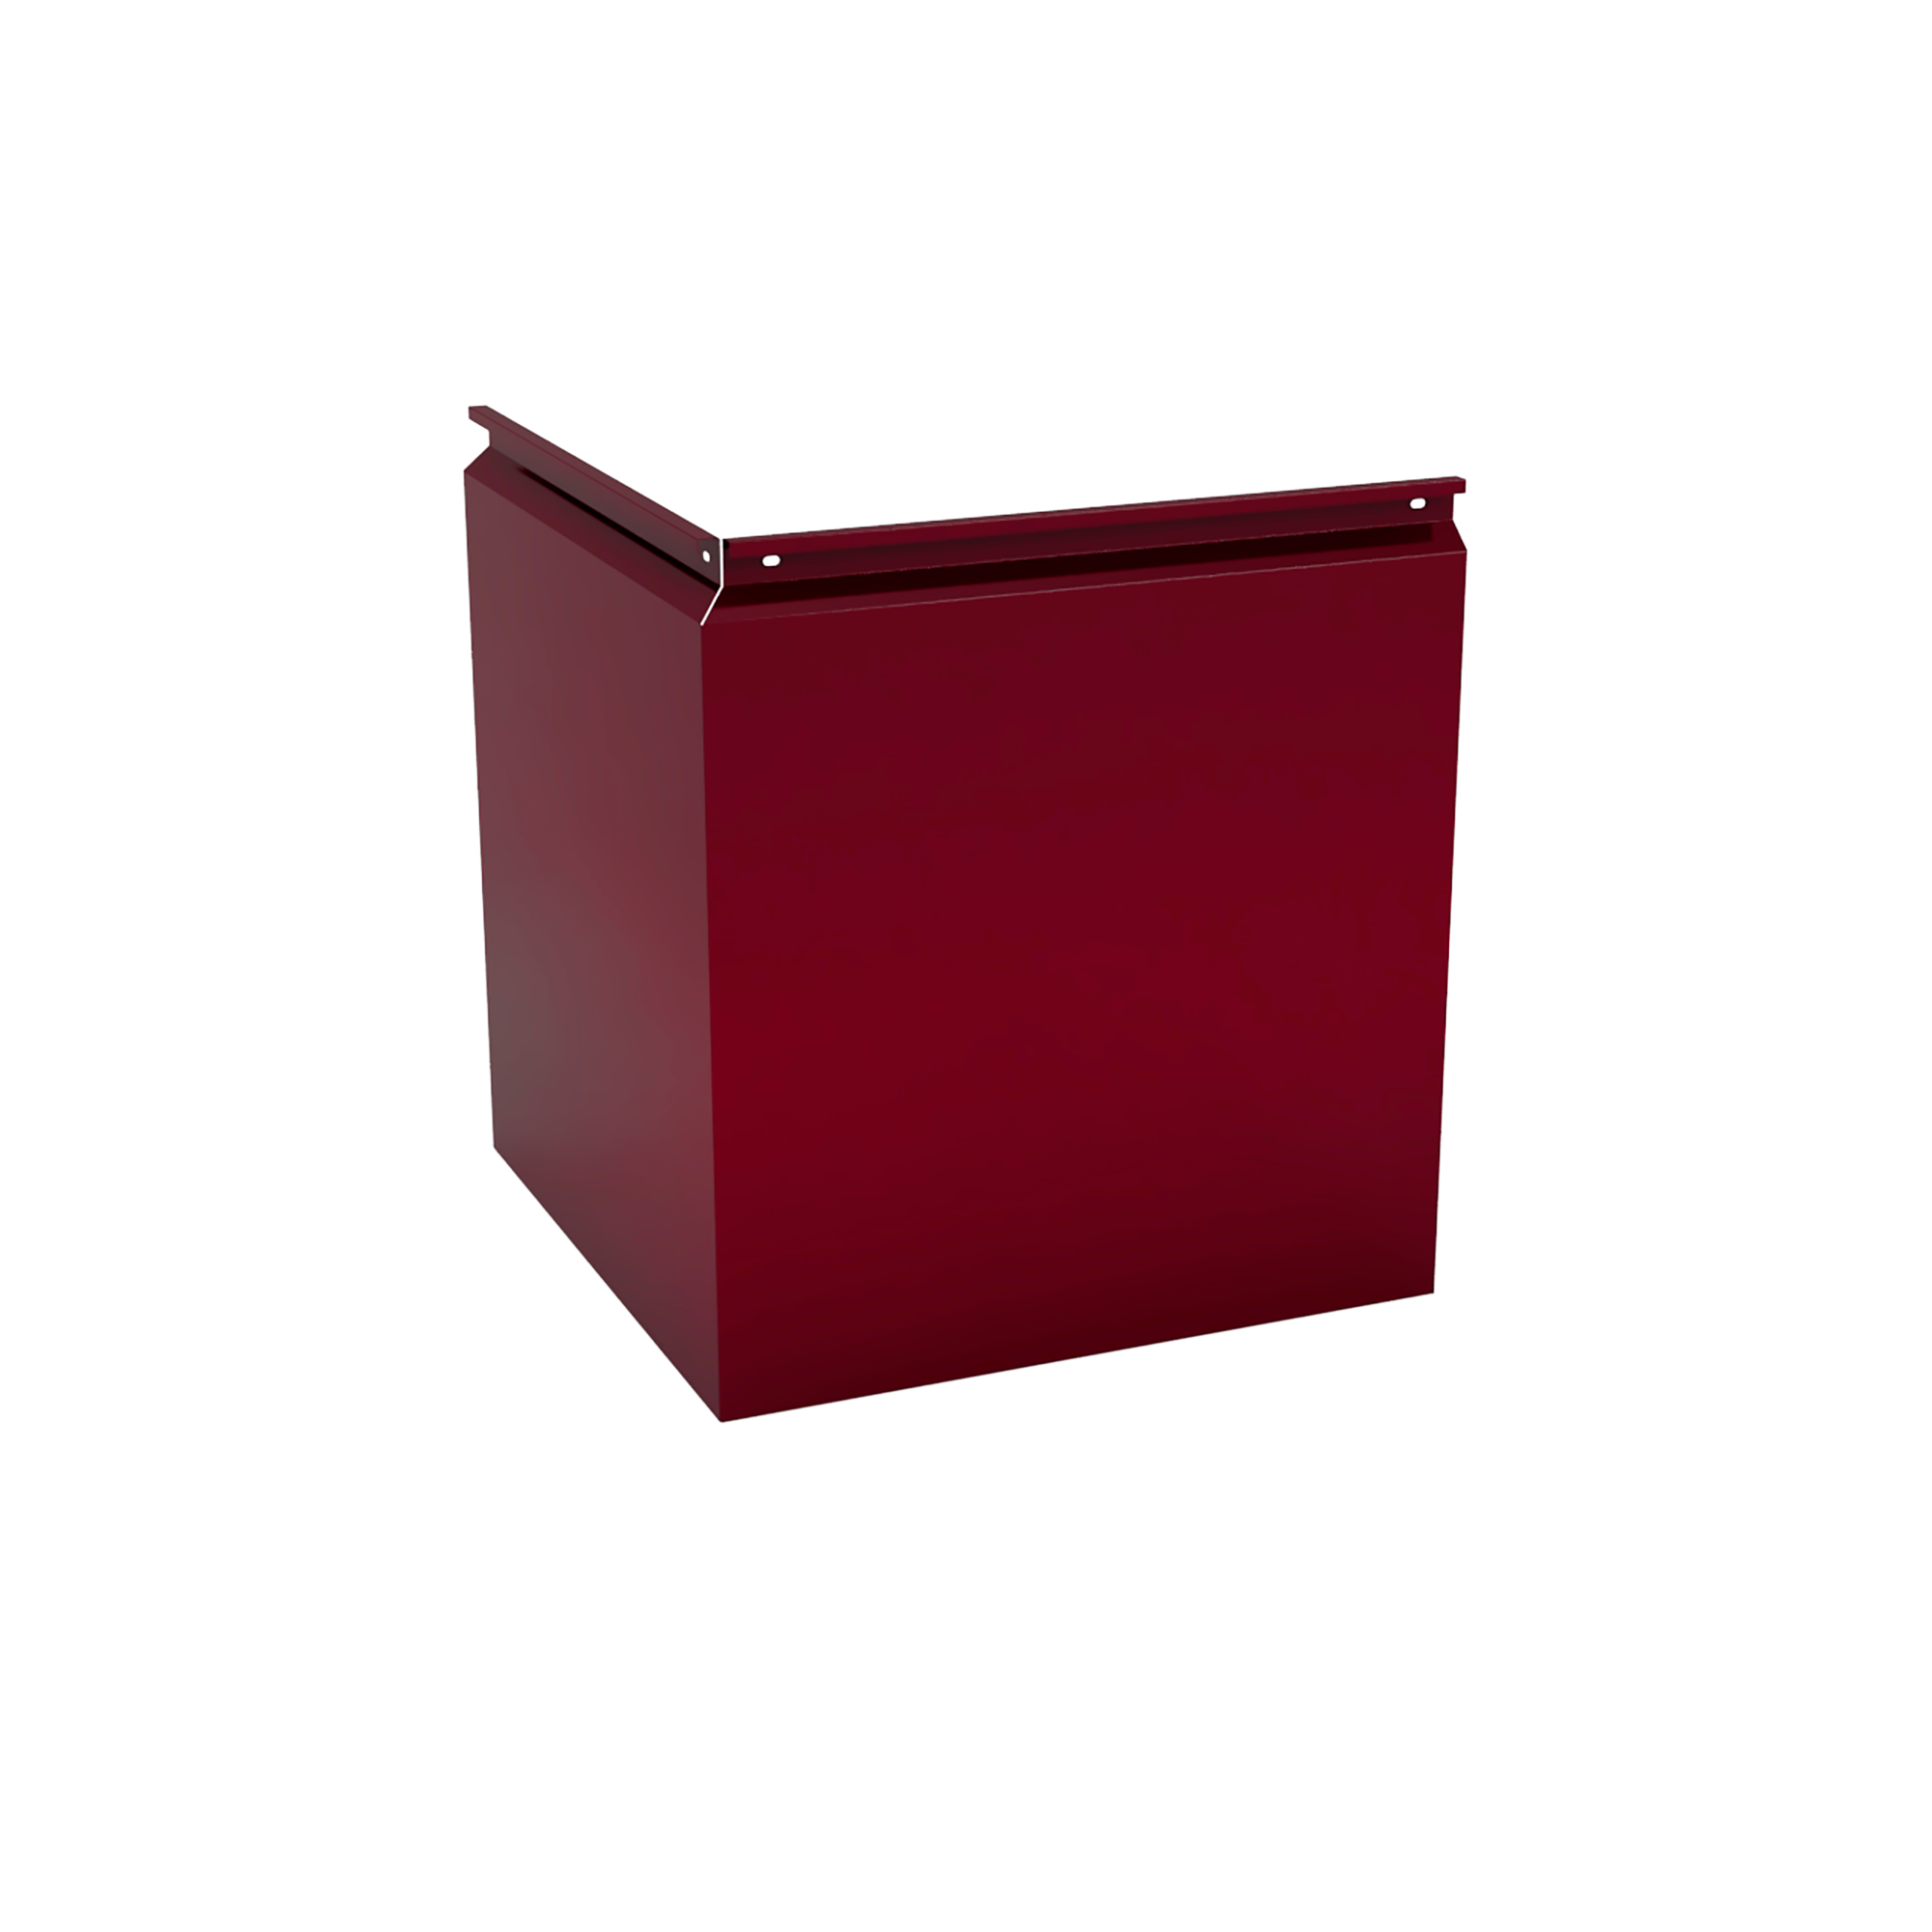 Фасадная кассета Угловая 550 Красно-коричневый 1,2 мм Фасадные кассеты Кровля Сервис